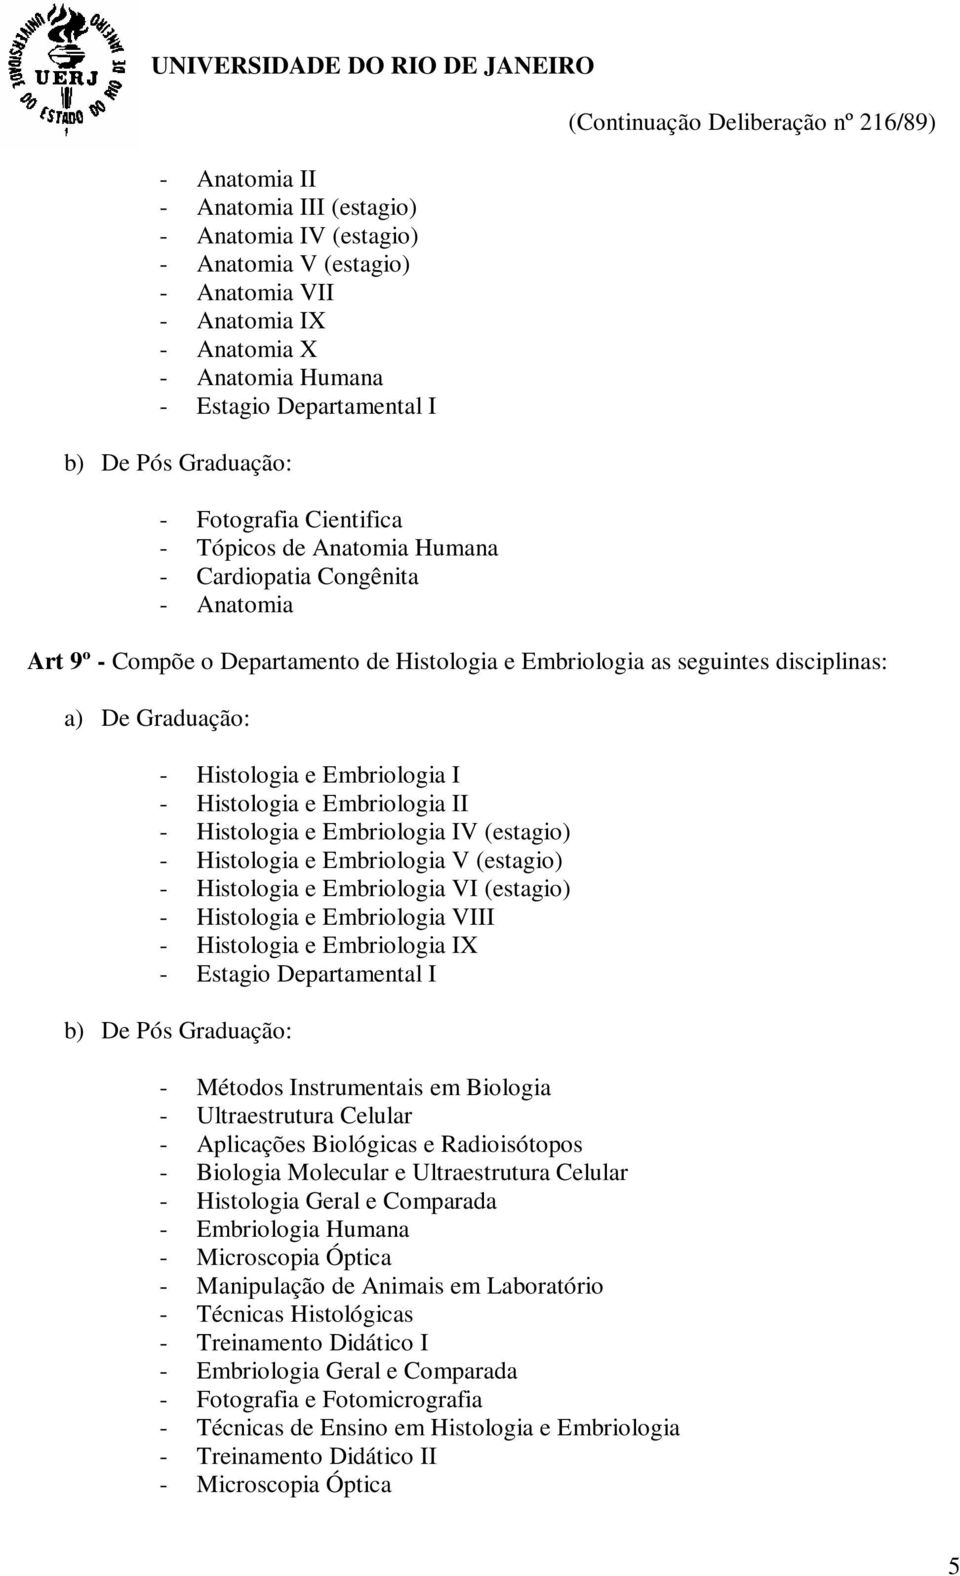 Histologia e Embriologia II - Histologia e Embriologia IV (estagio) - Histologia e Embriologia V (estagio) - Histologia e Embriologia VI (estagio) - Histologia e Embriologia VIII - Histologia e